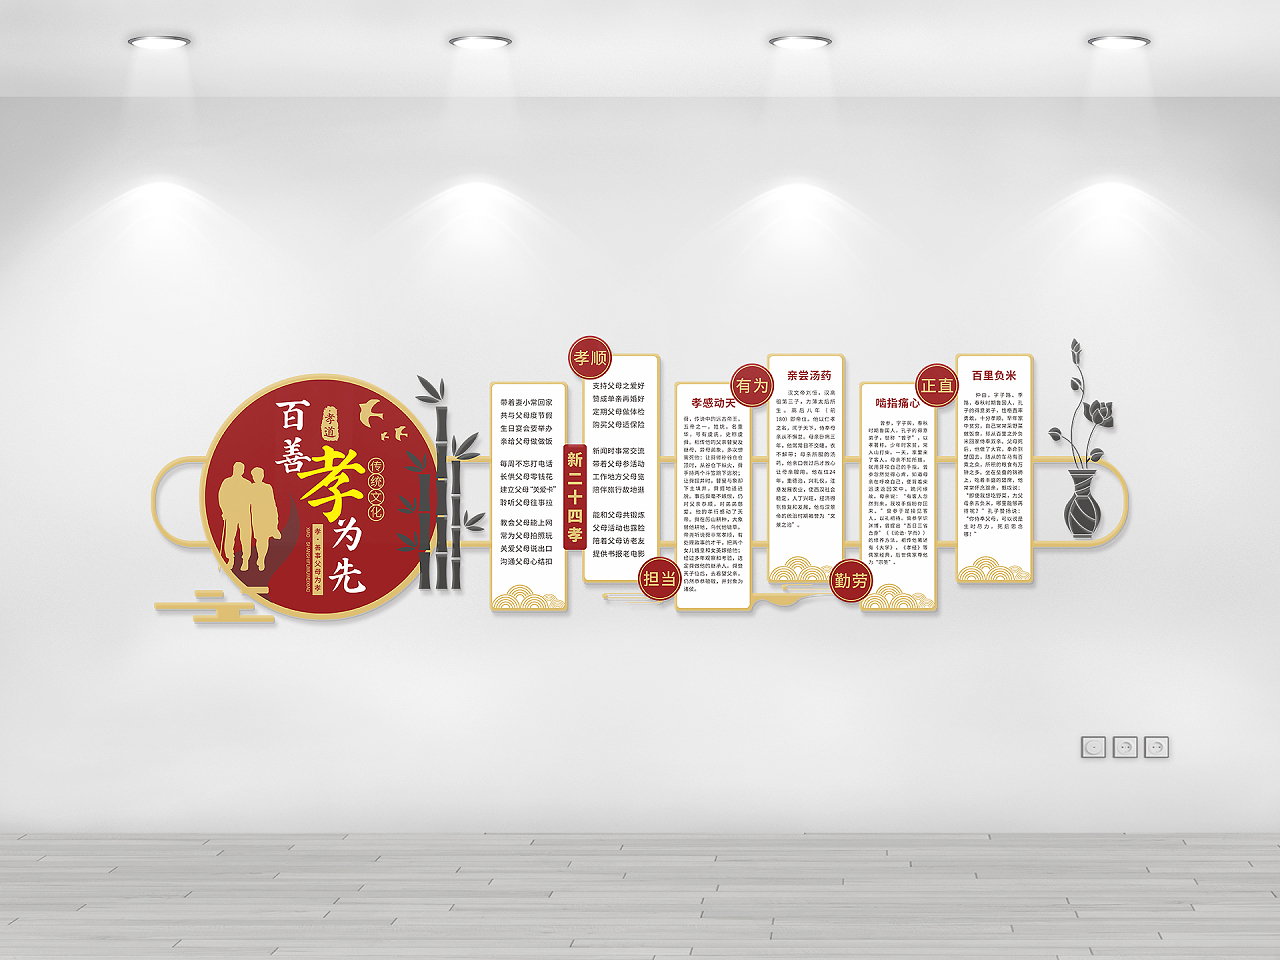 红色简约大气孝道社区文化墙设计模板